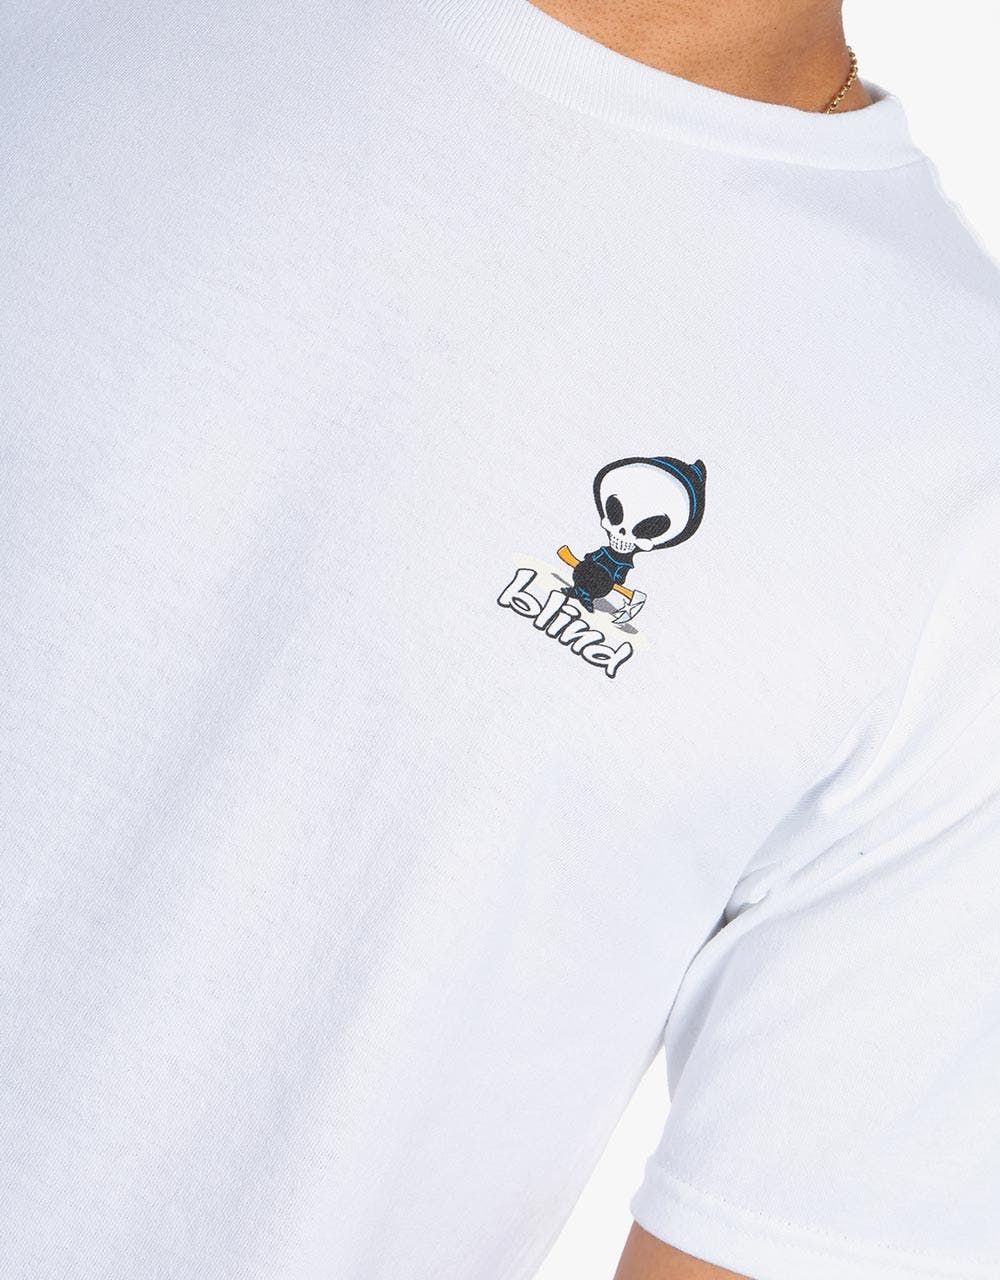 Blind OG Reaper T-Shirt - White